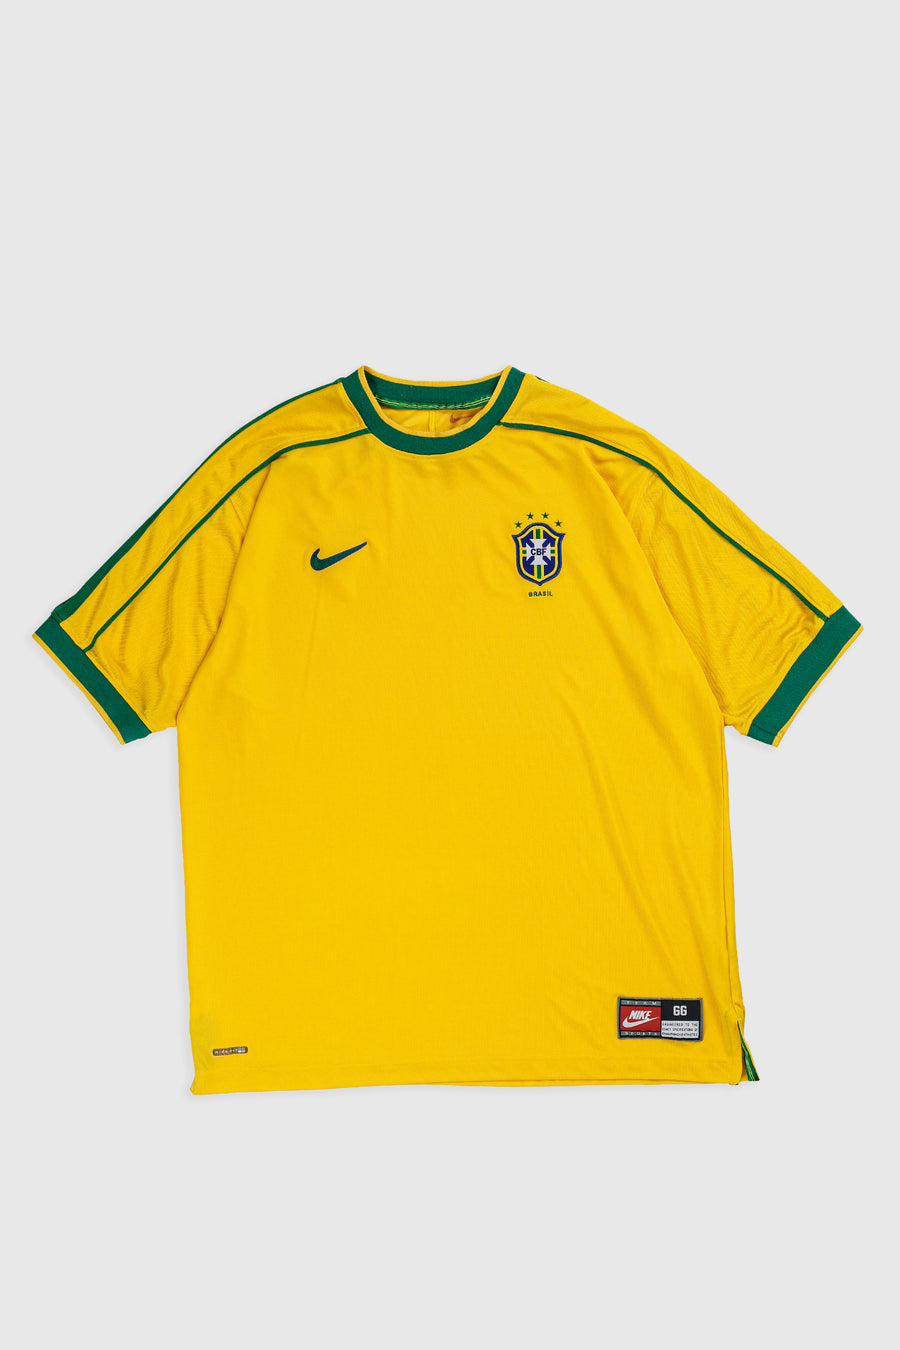 Vintage Brazil Soccer Jersey - XL